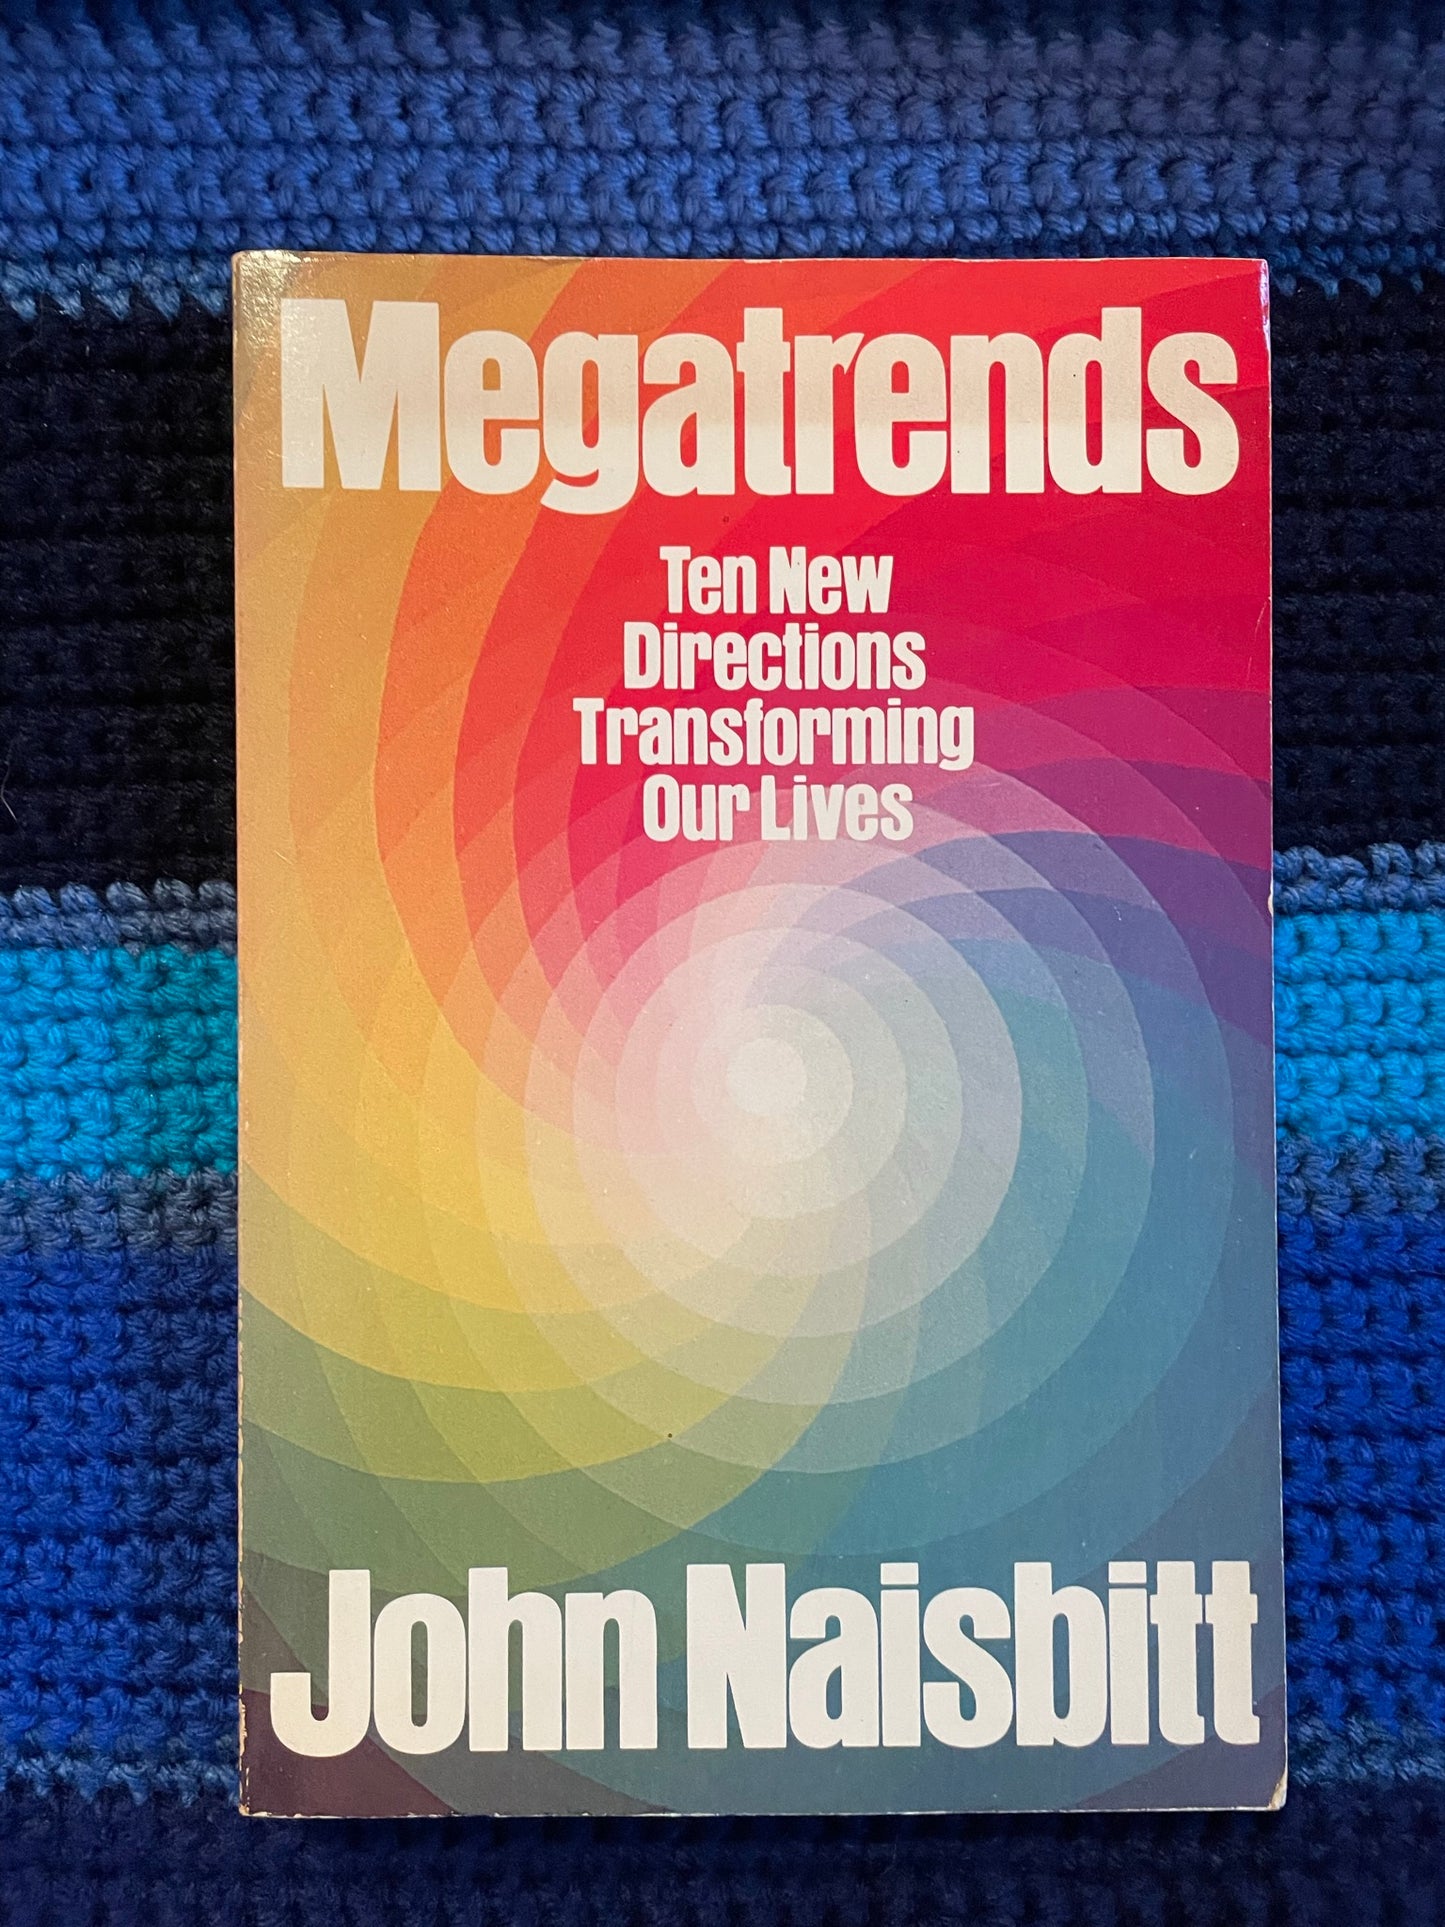 Naisbitt, John: Megatrends - Ten New Directions Transforming Our Lives (1982)